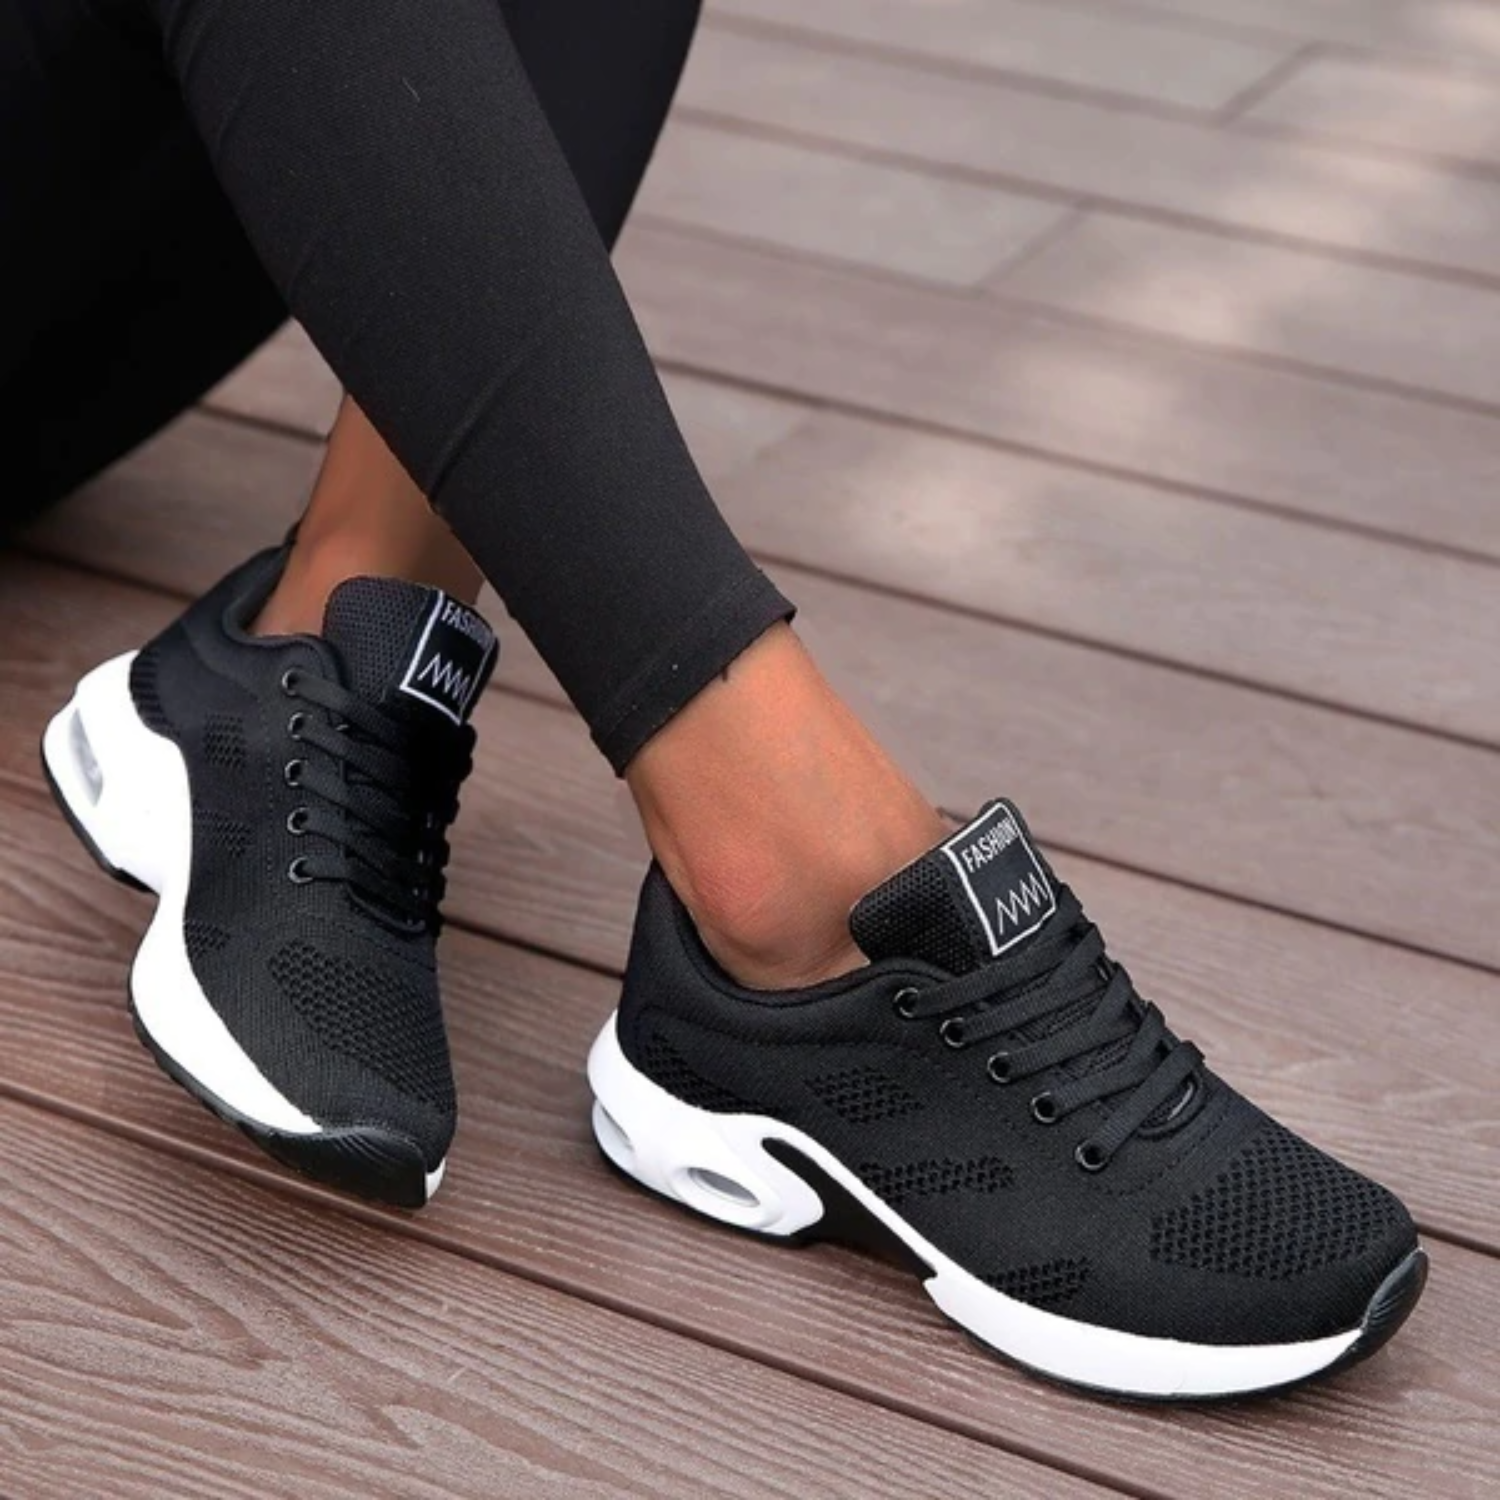 Emma - Orthopedic Running Shoes